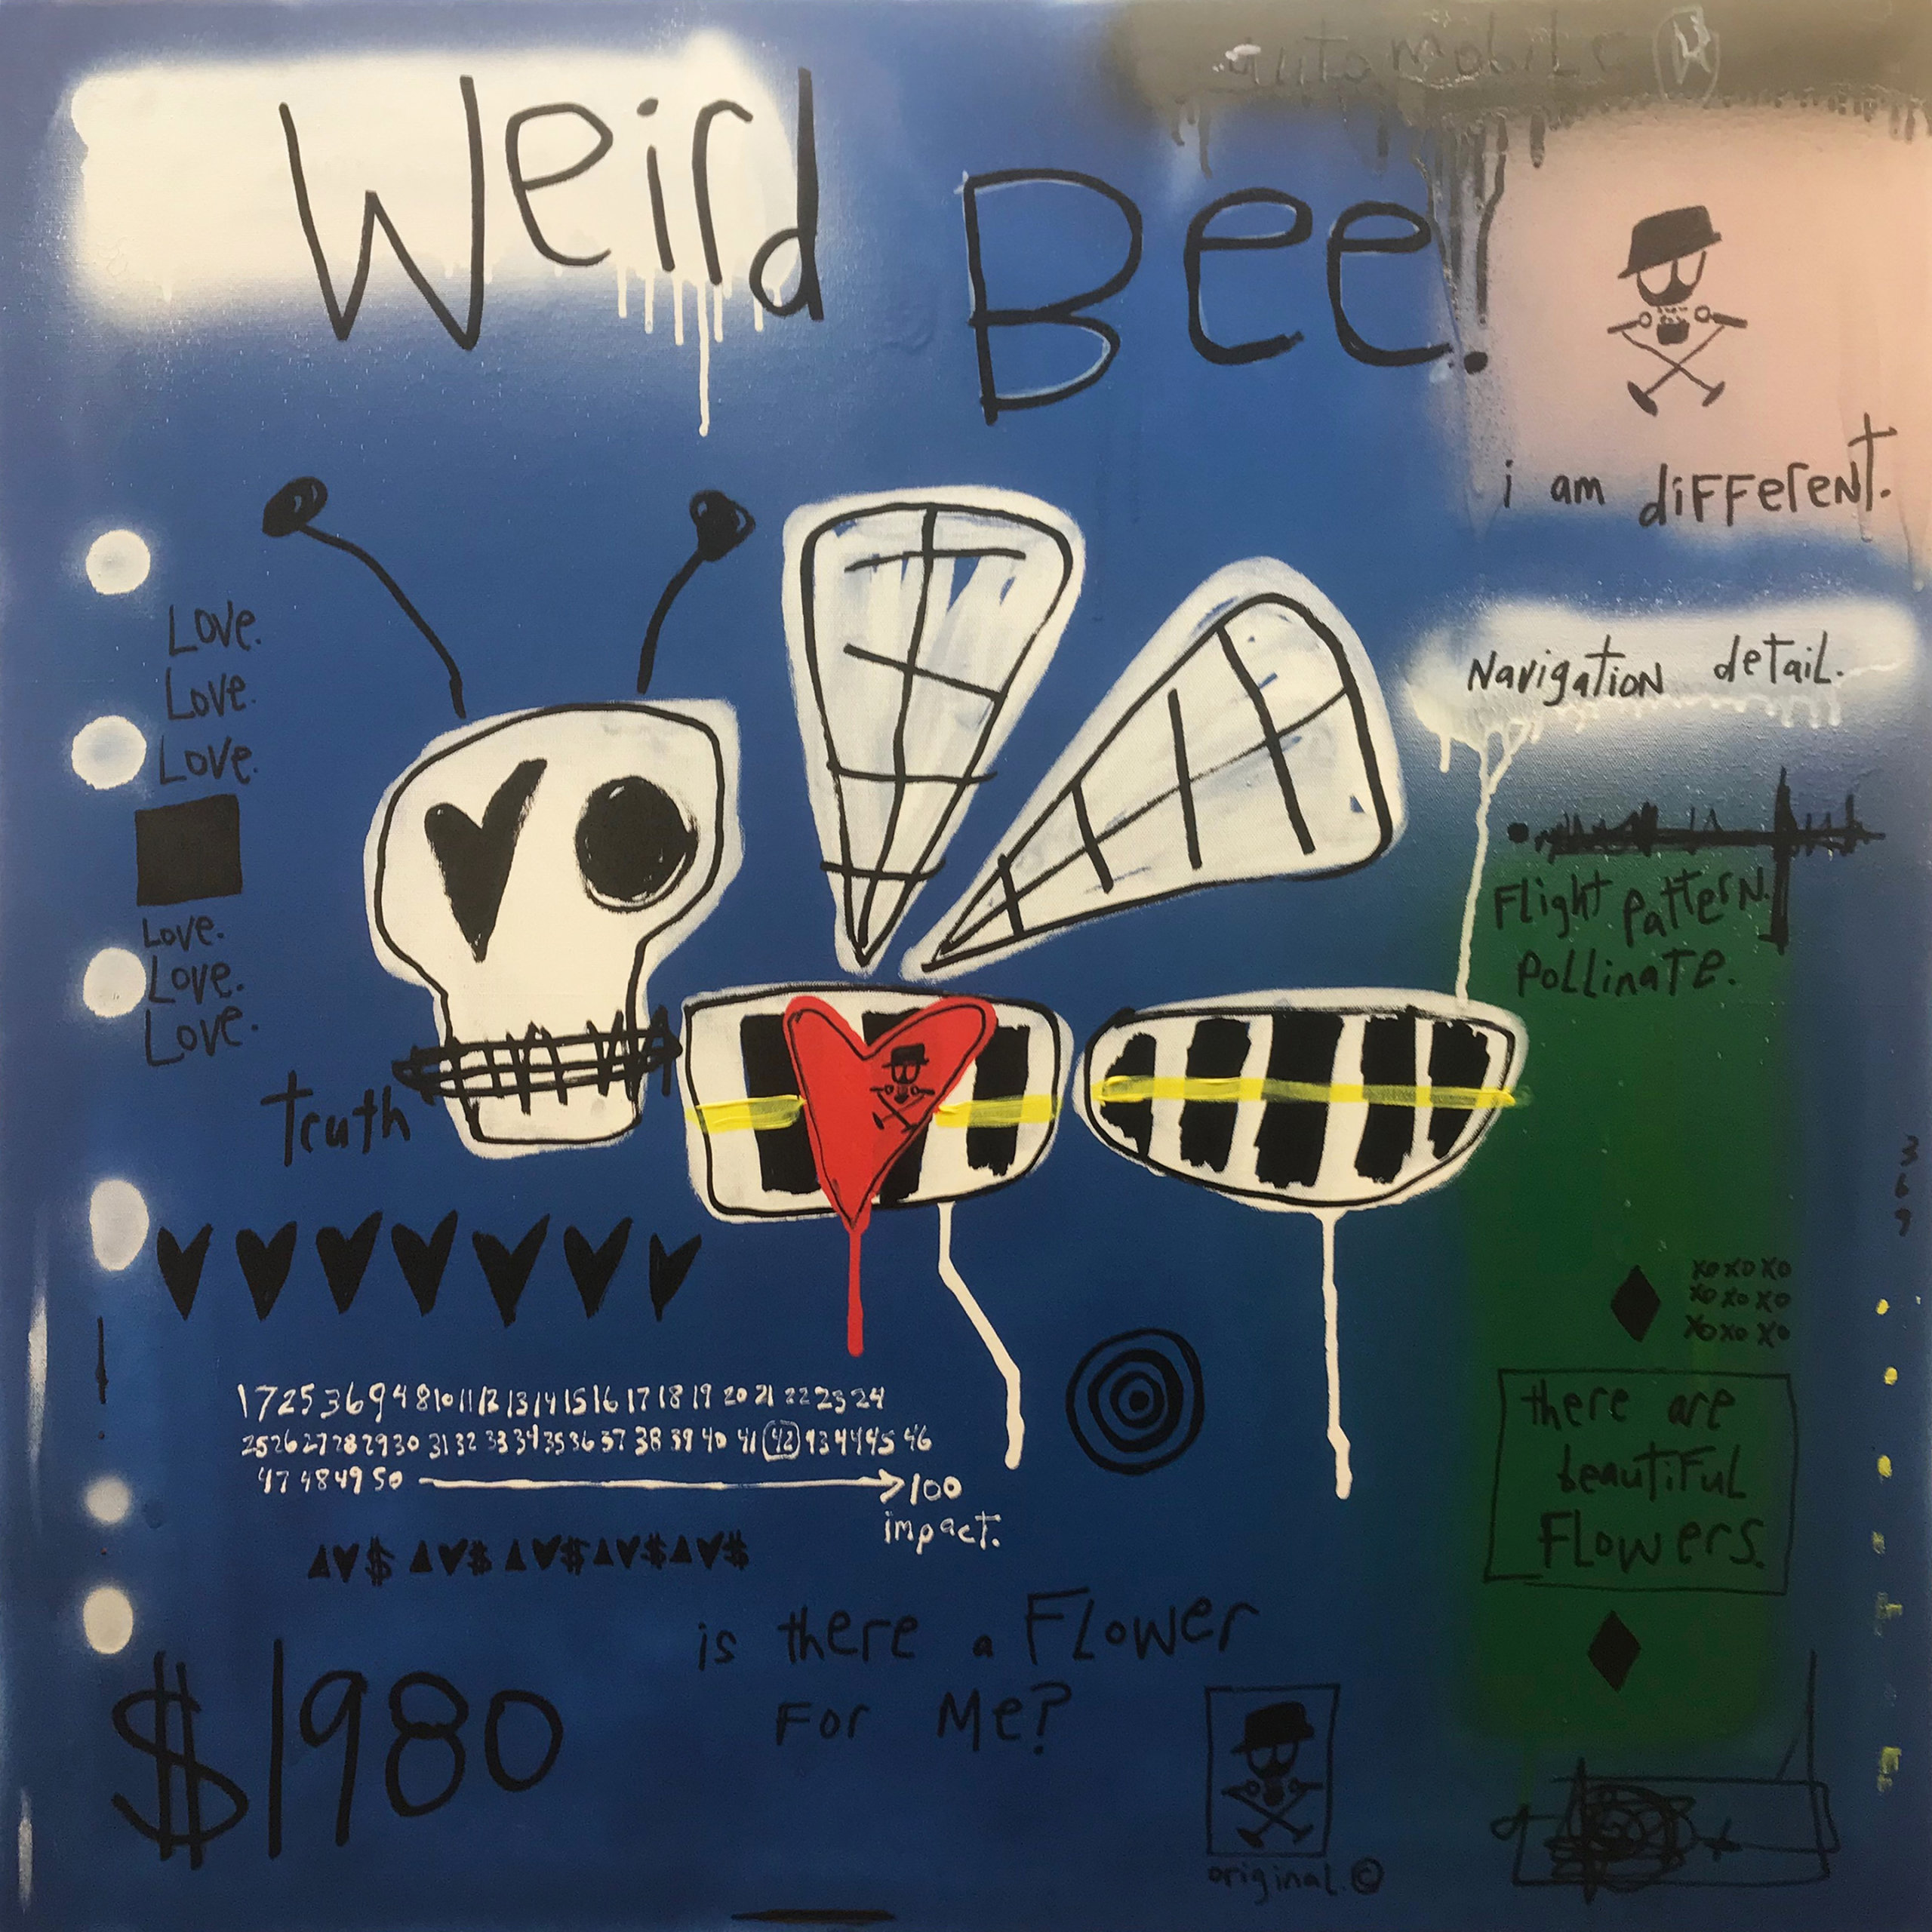 "Weird Bee" by Adam Baranello